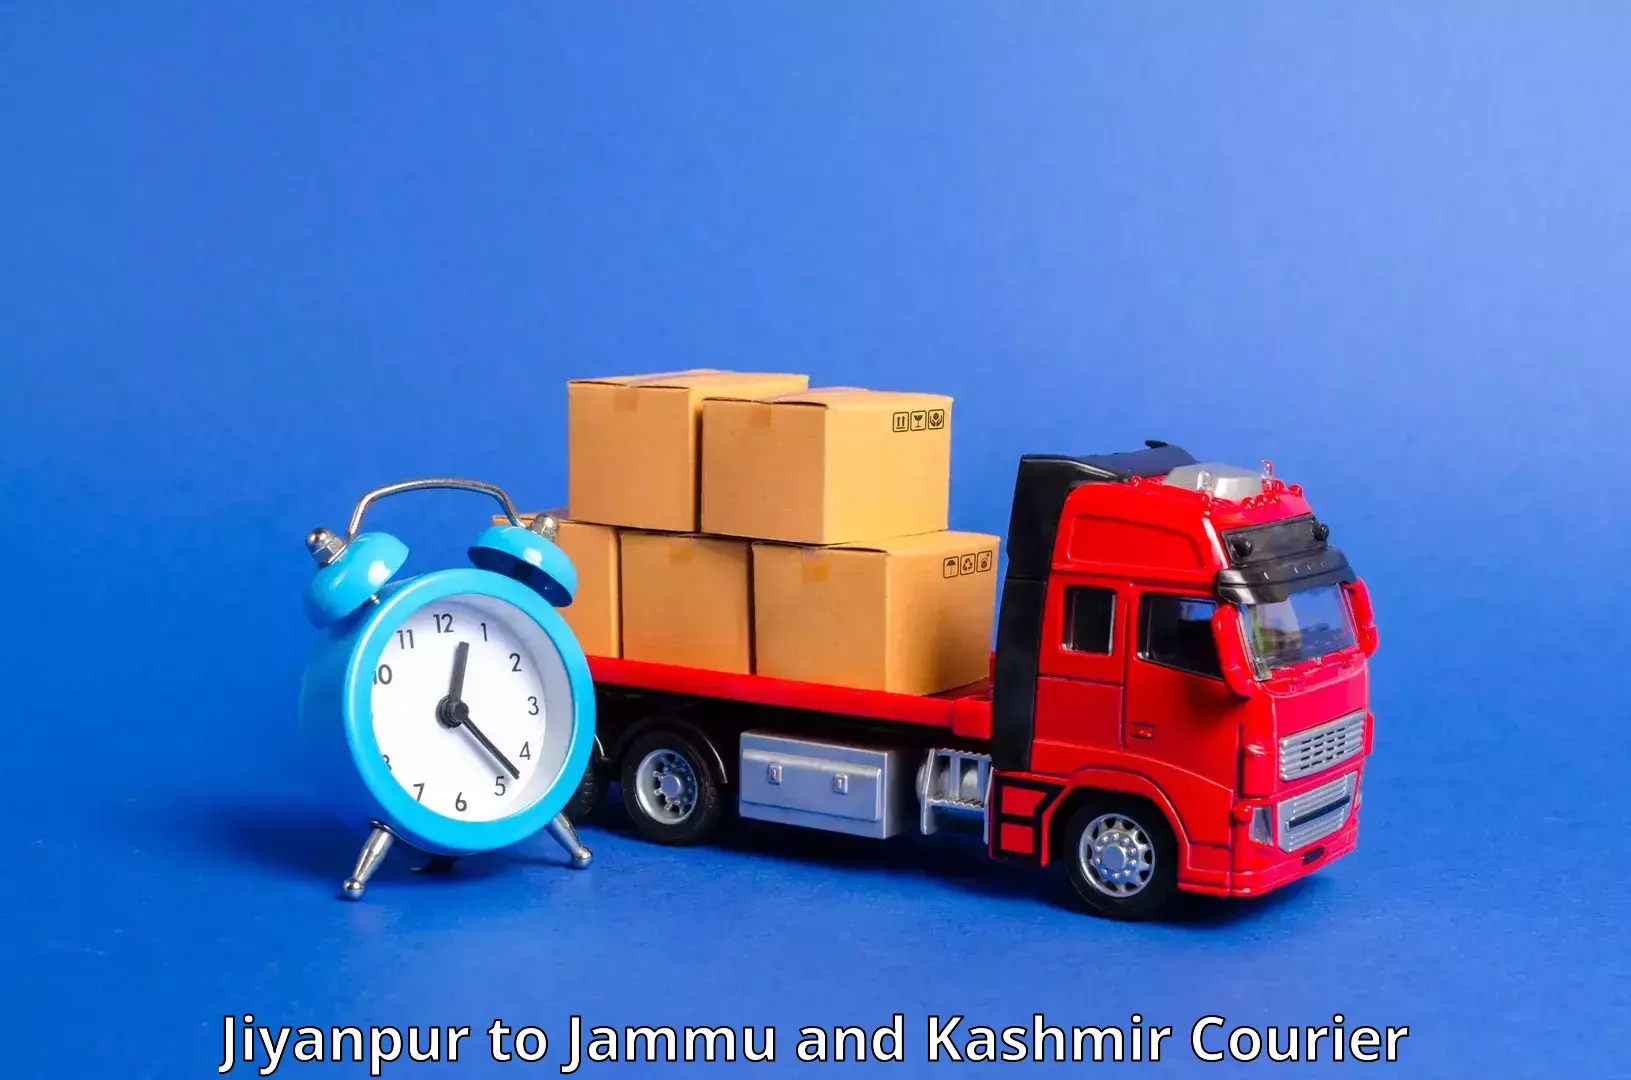 Premium courier services Jiyanpur to Hiranagar